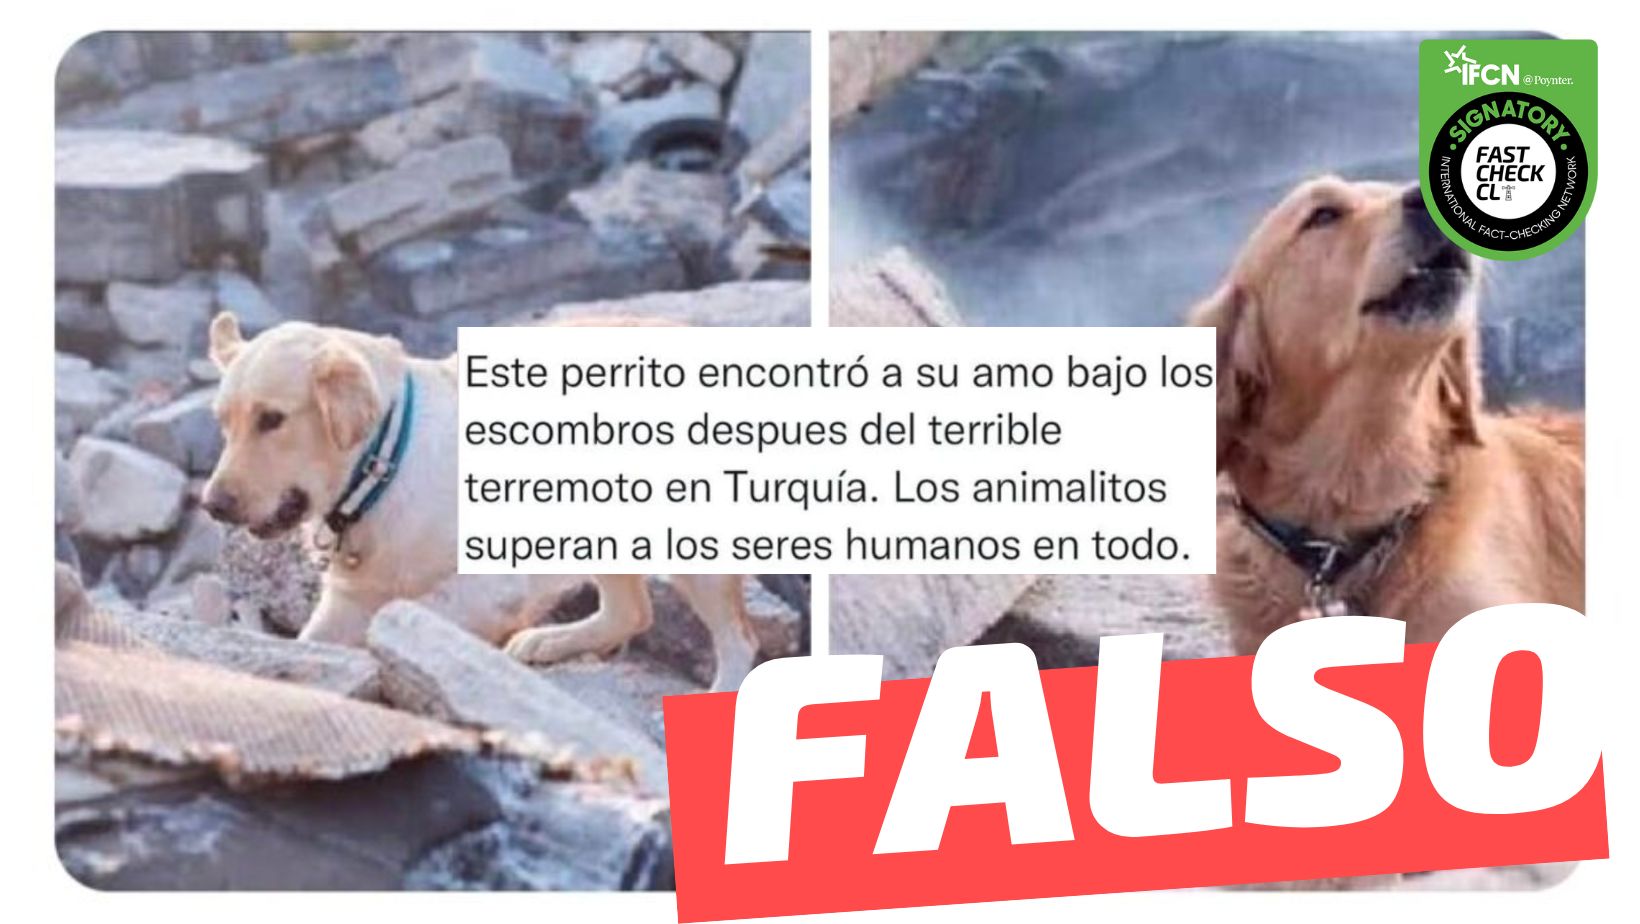 You are currently viewing (Imágenes) “Este perrito encontró a su amo bajo los escombros después del terrible terremoto en Turquía”: #Falso